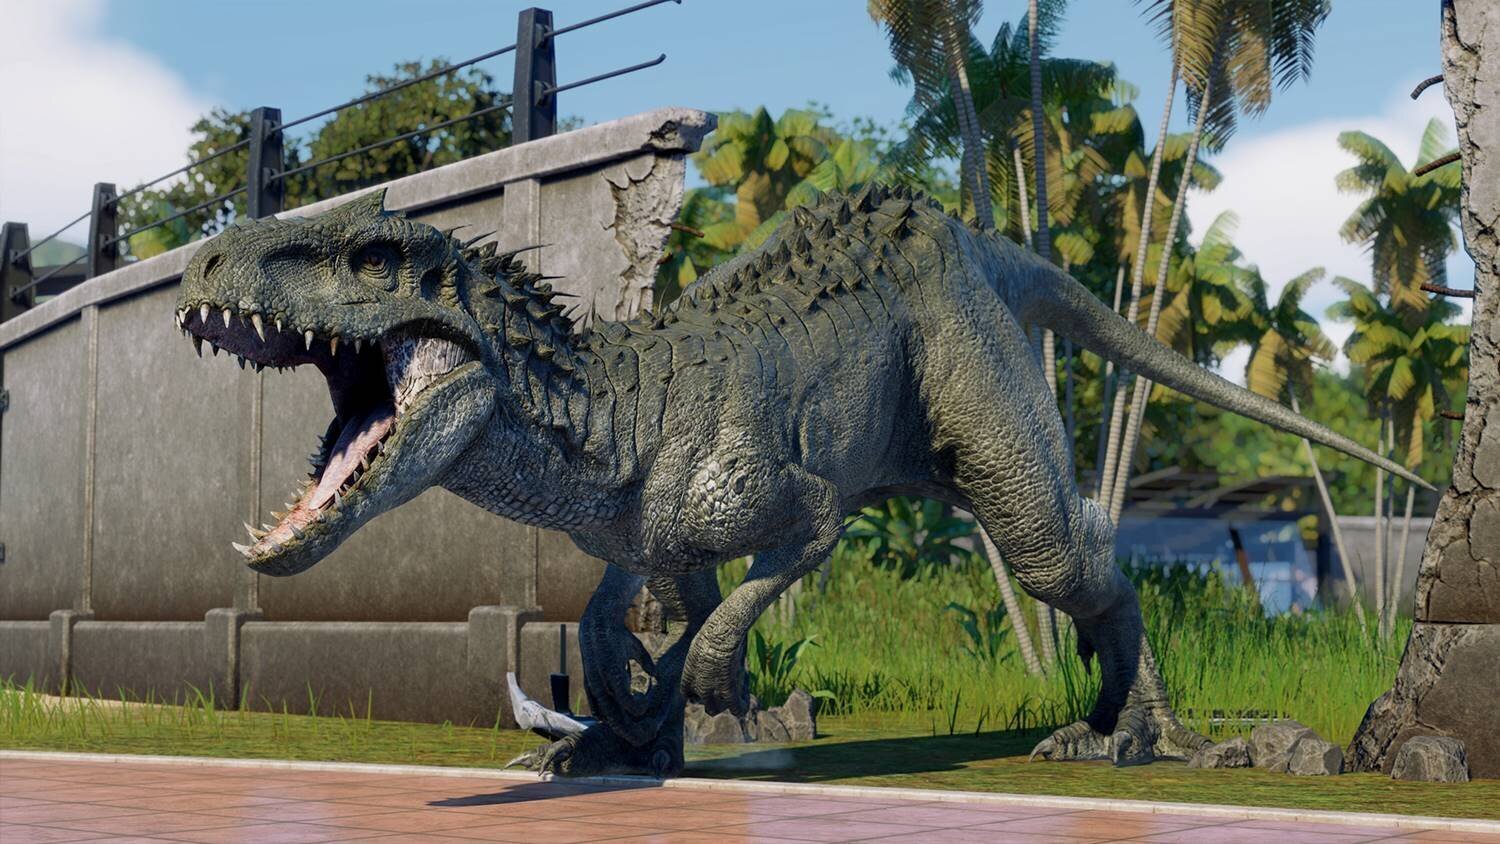 PS5 Jurassic World Evolution 2 cena un informācija | Datorspēles | 220.lv